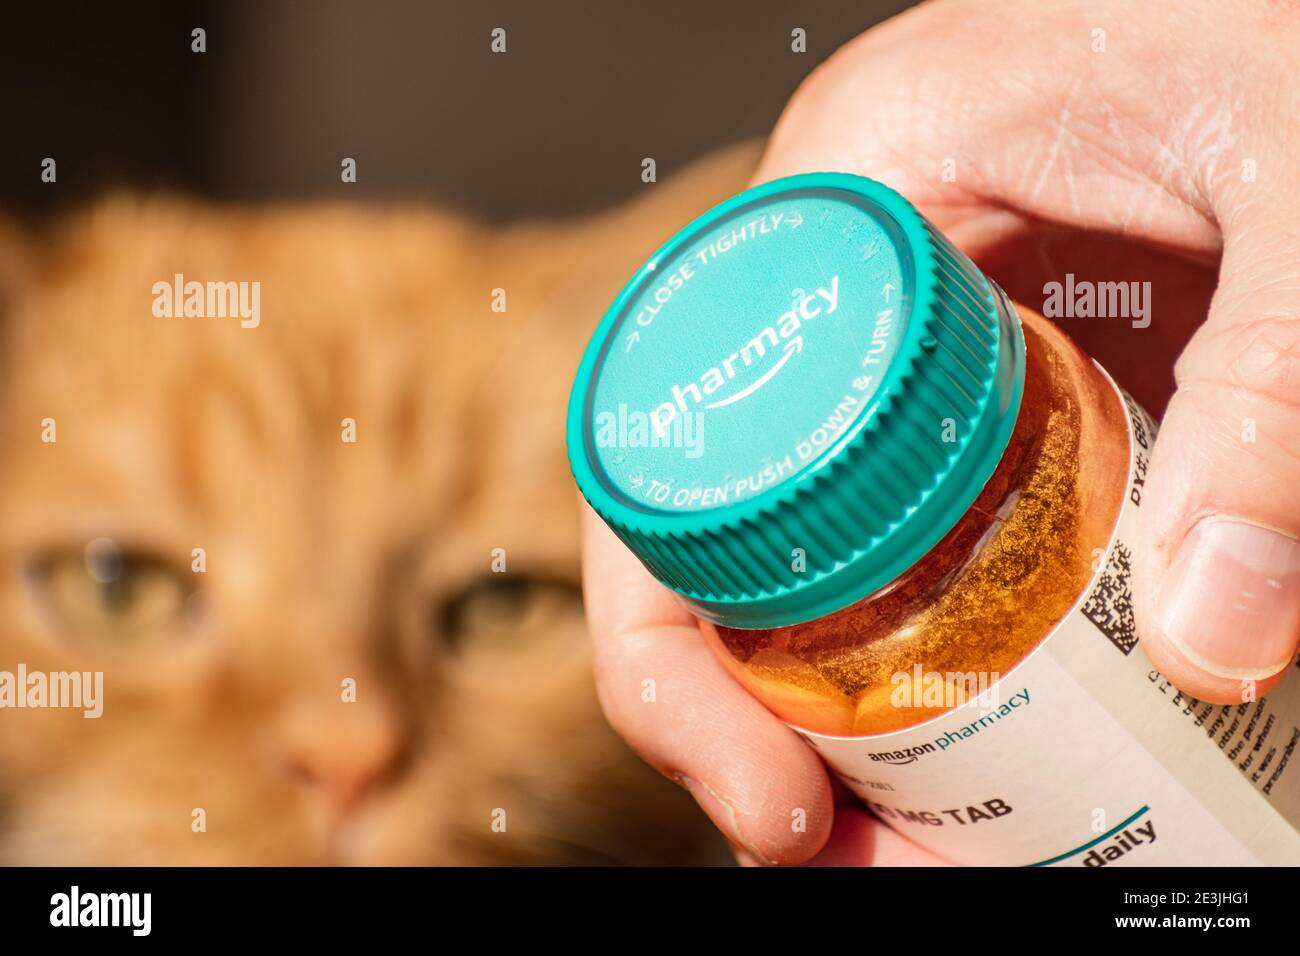 Mano che tiene una bottiglia di Amazon Pharmacy Rx; faccia del gatto sfocata visibile sullo sfondo; Amazon Pharmacy è una farmacia online americana, filiale di A. Foto Stock